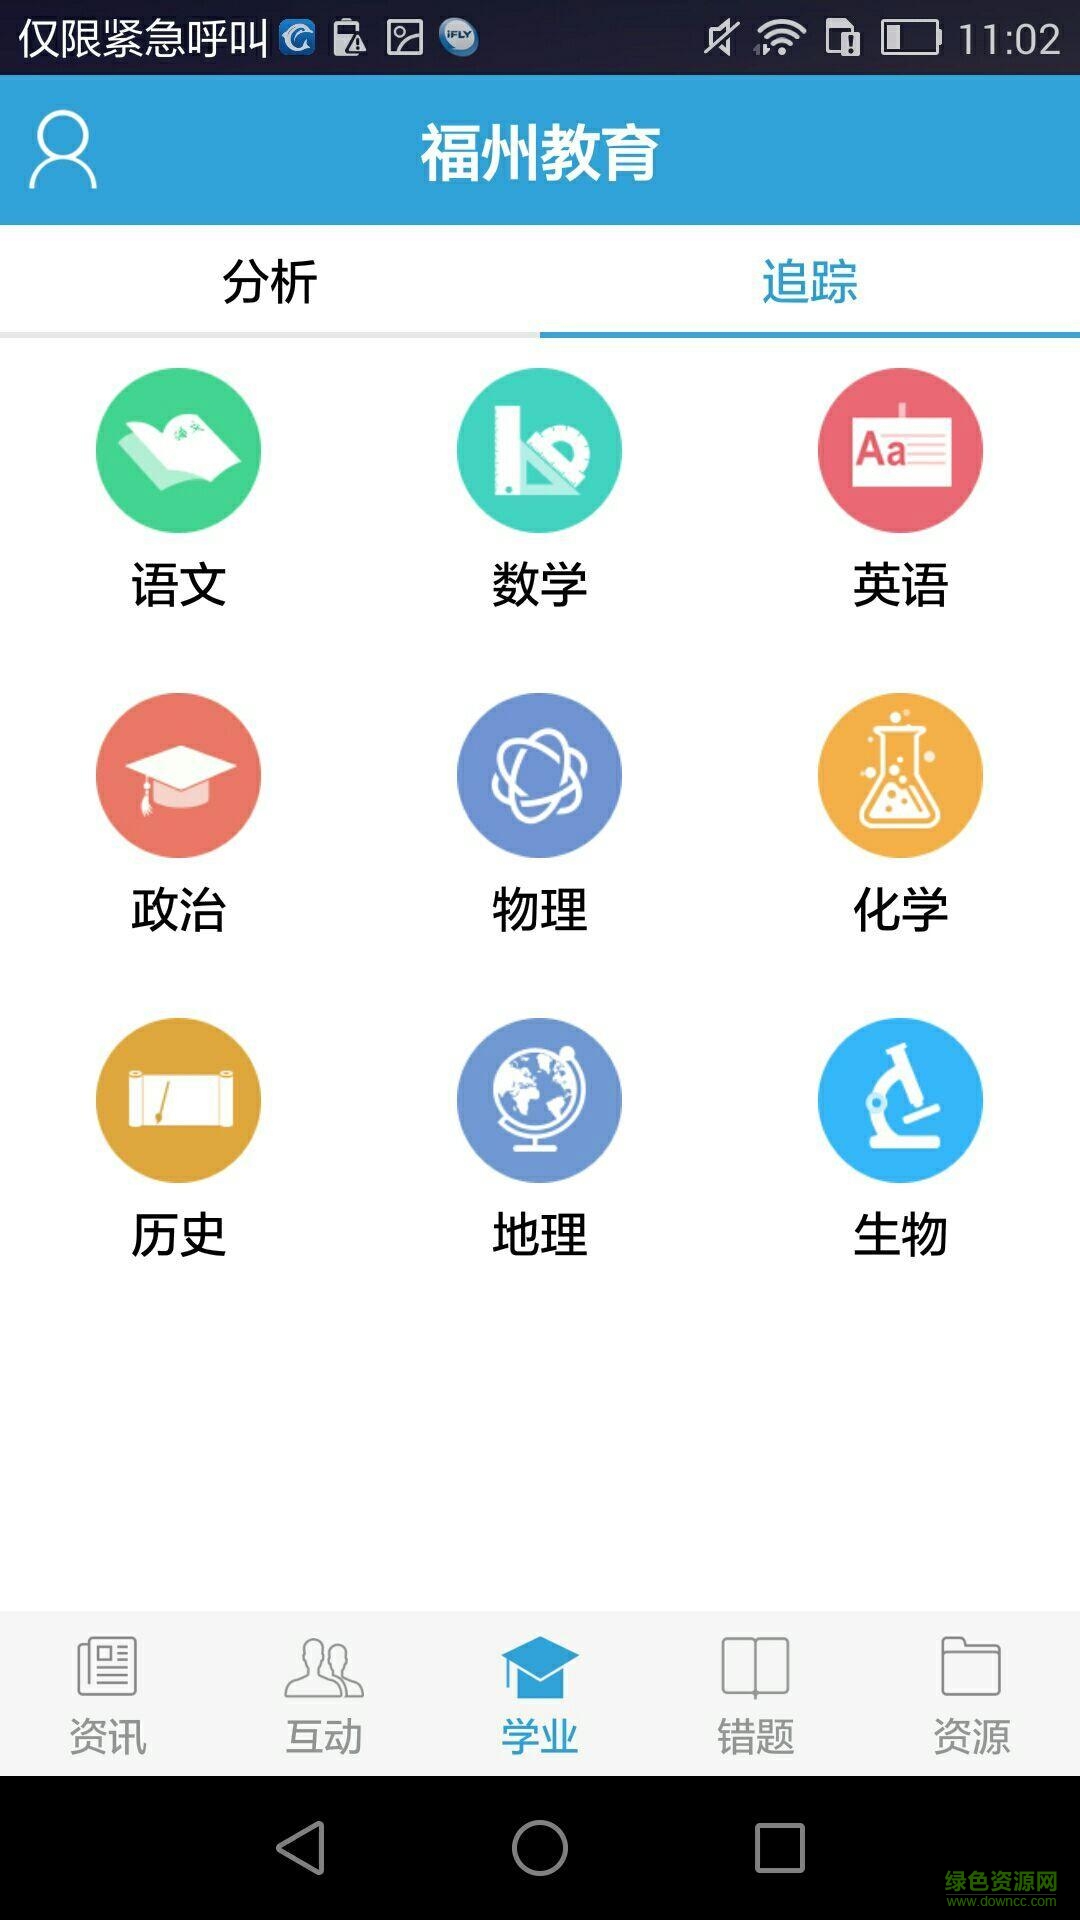 福州教育手机报ios版 v3.7 iphone官方版